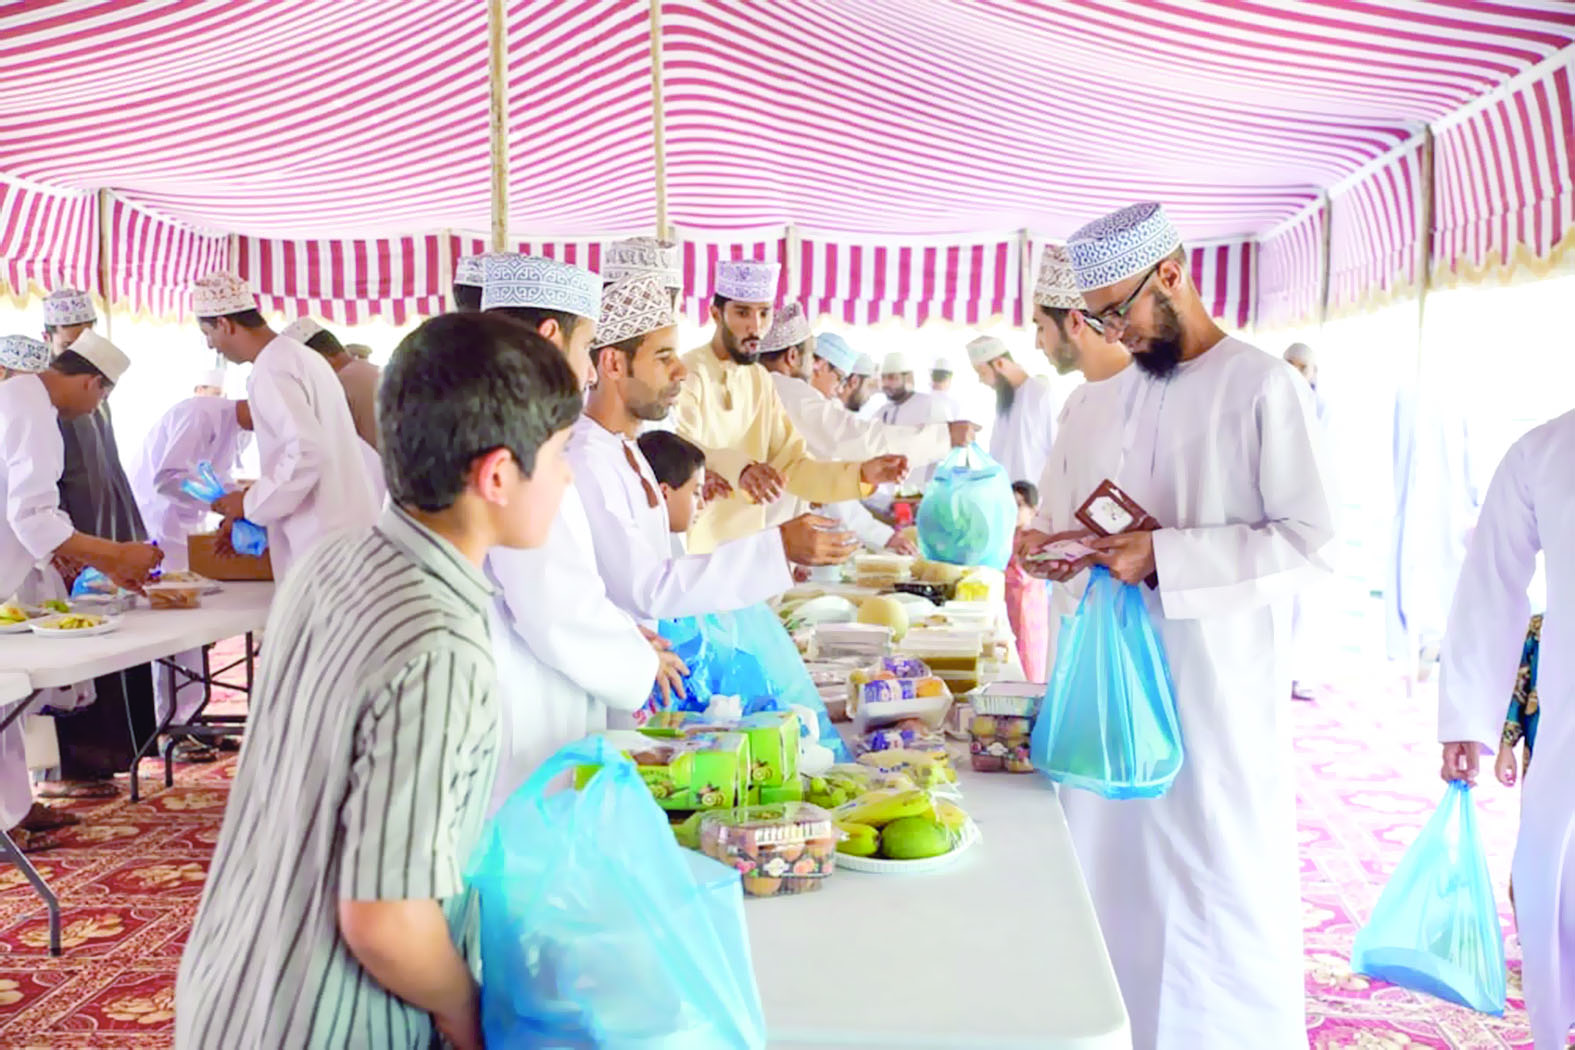 فريق الهلال ينظم فعاليات وأنشطة رمضانية في الرستاق